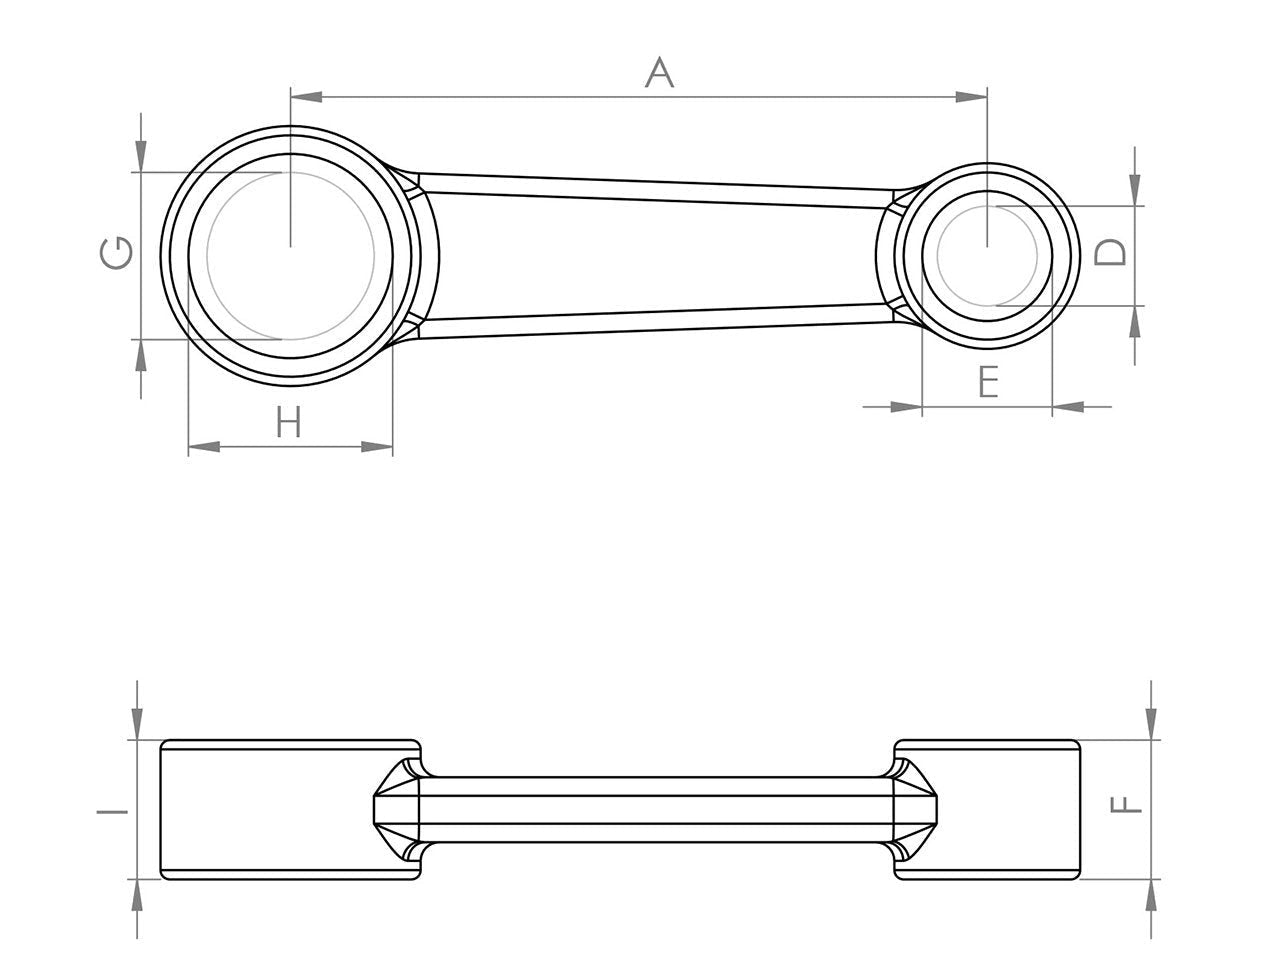 Zeichnung Barikit Pleuel für einen Honda CRF 250R Motor mit Bemaßung.